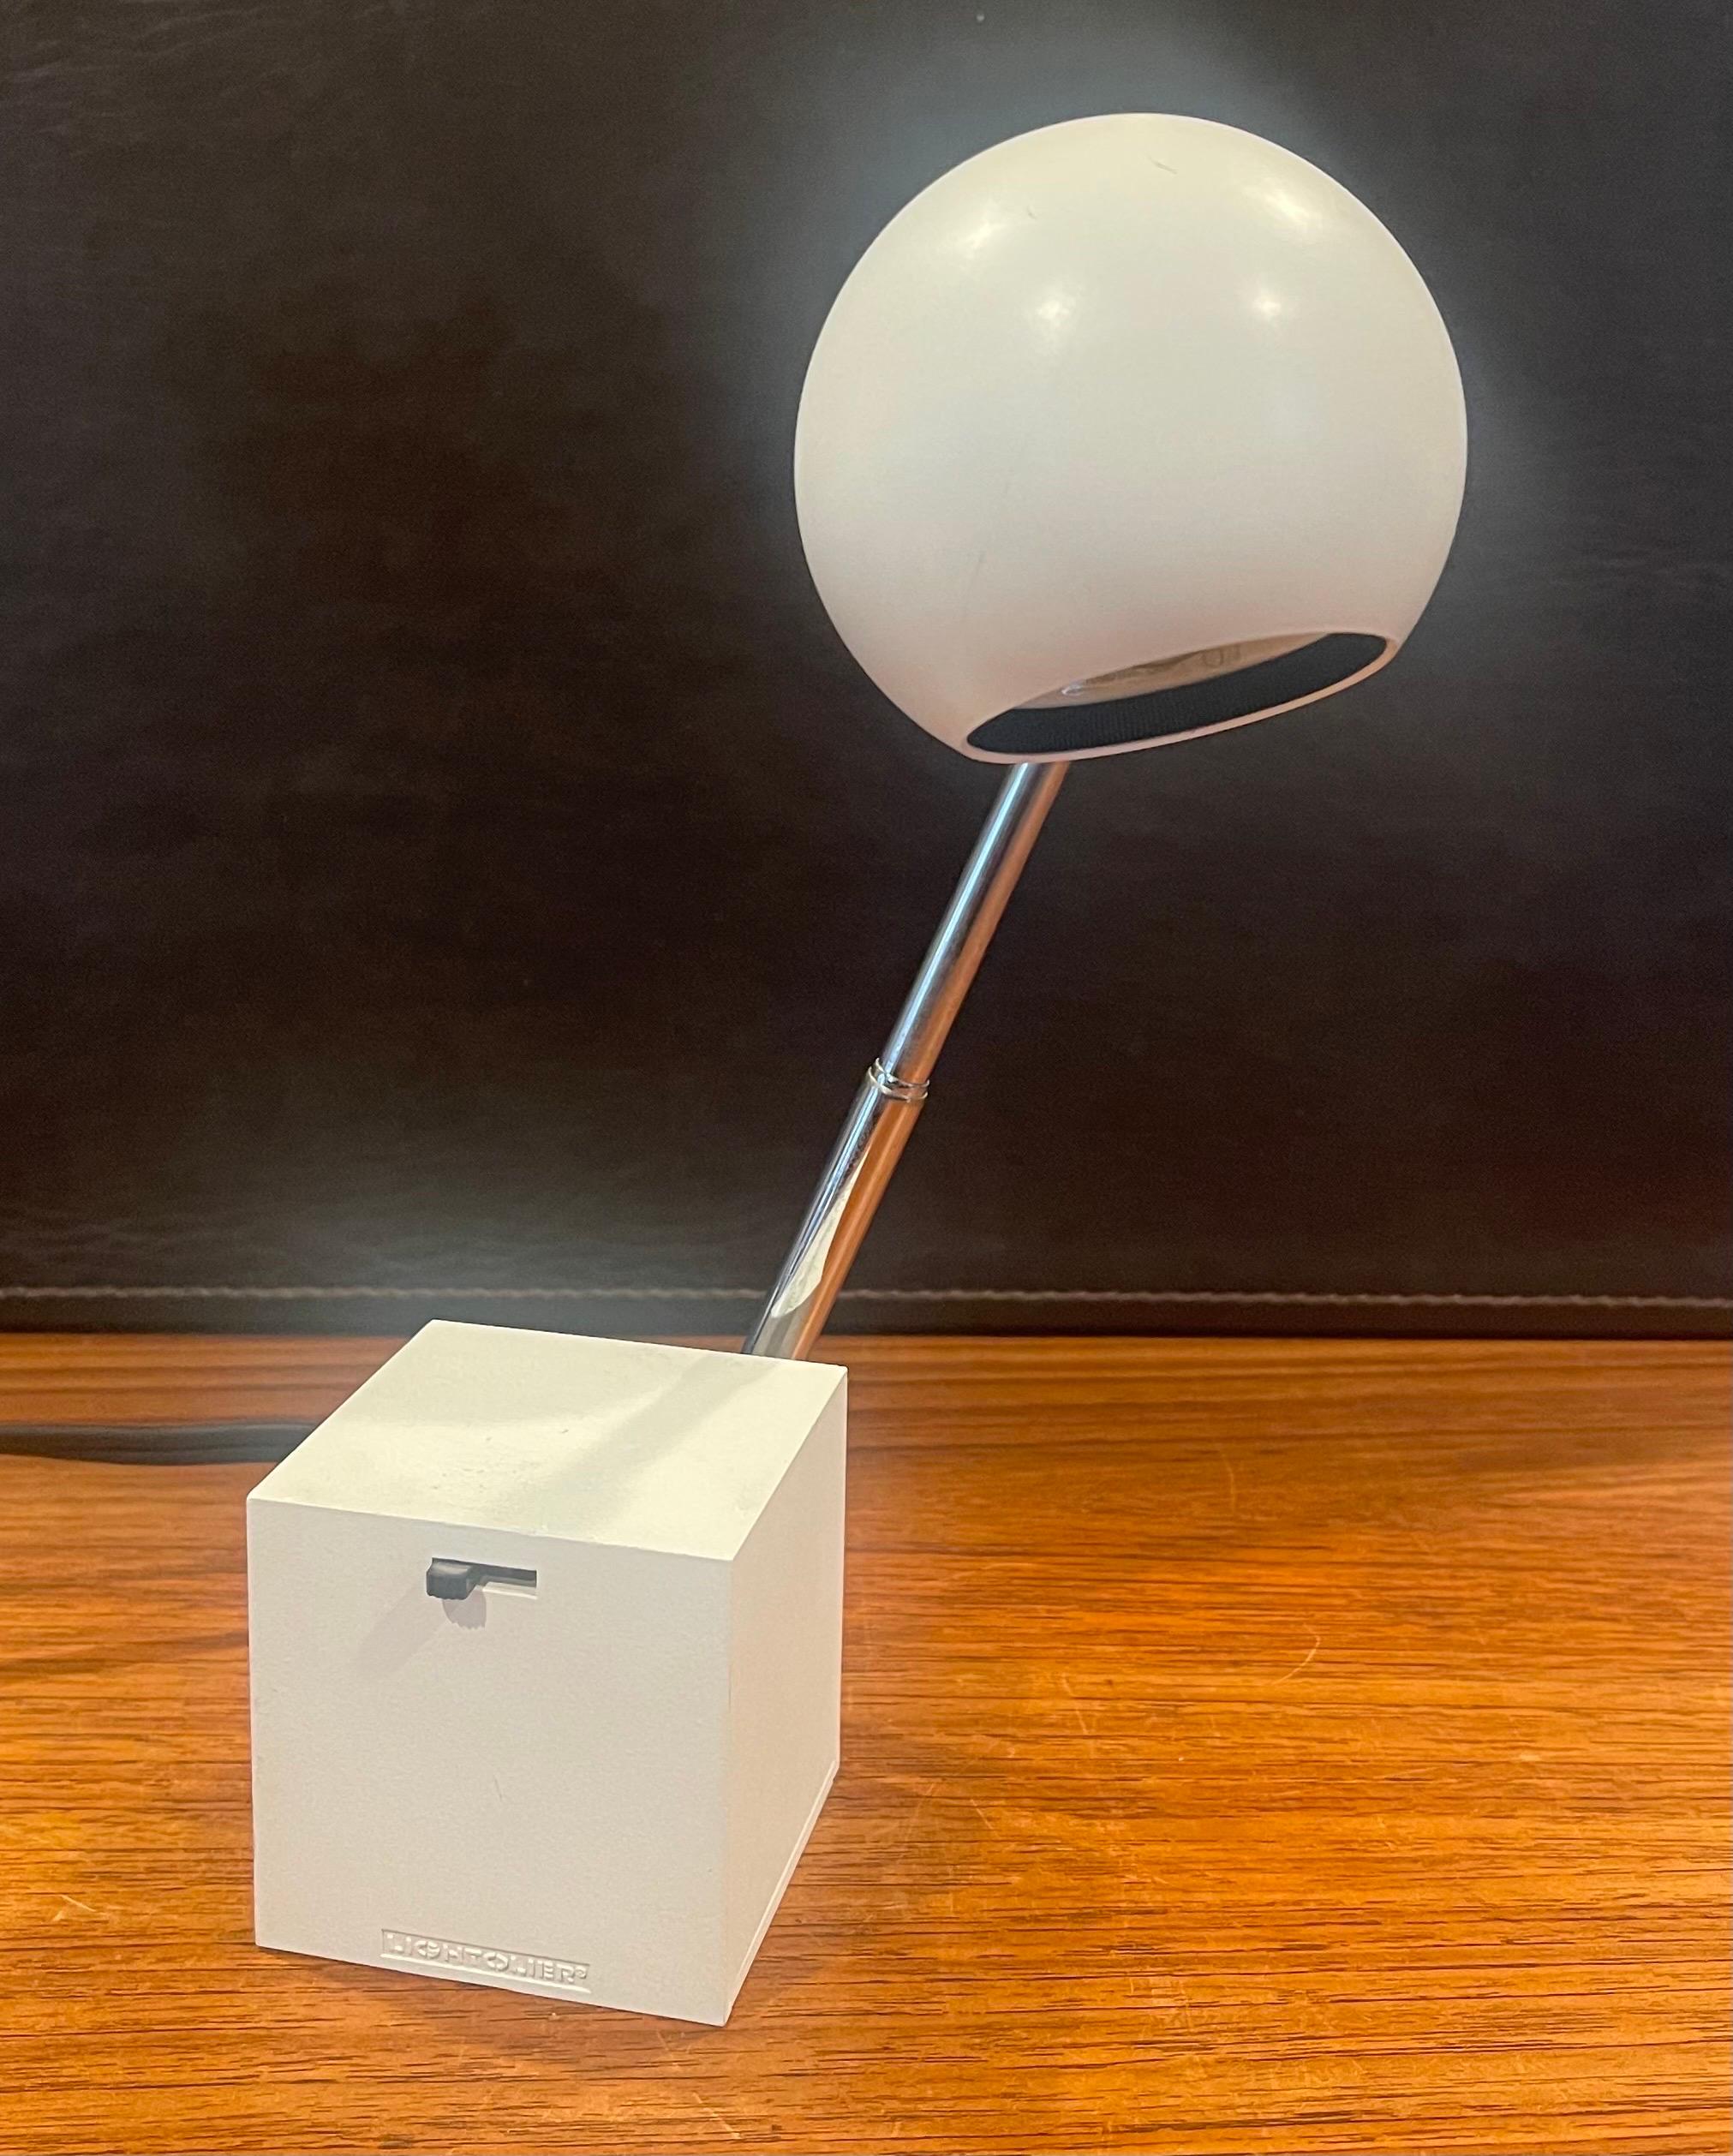 Cast Lytegem Spherical Desk Lamp by Michael Lax for Lightoiler For Sale